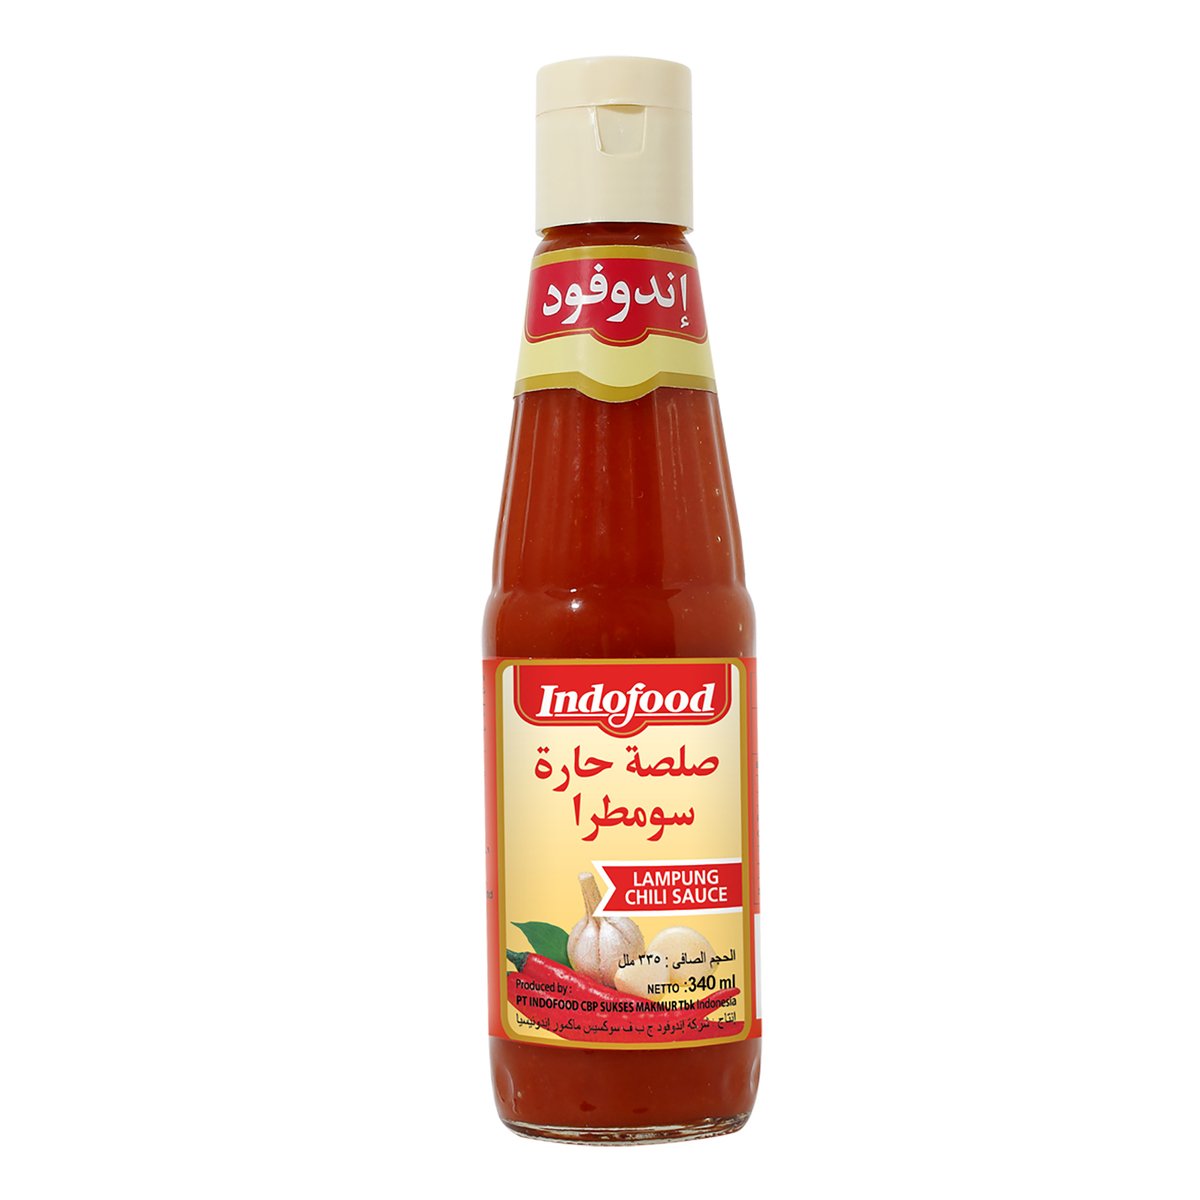 اشتري قم بشراء إندوفود صلصة حارة سومطرا 340مل Online at Best Price من الموقع - من لولو هايبر ماركت Sauces في السعودية